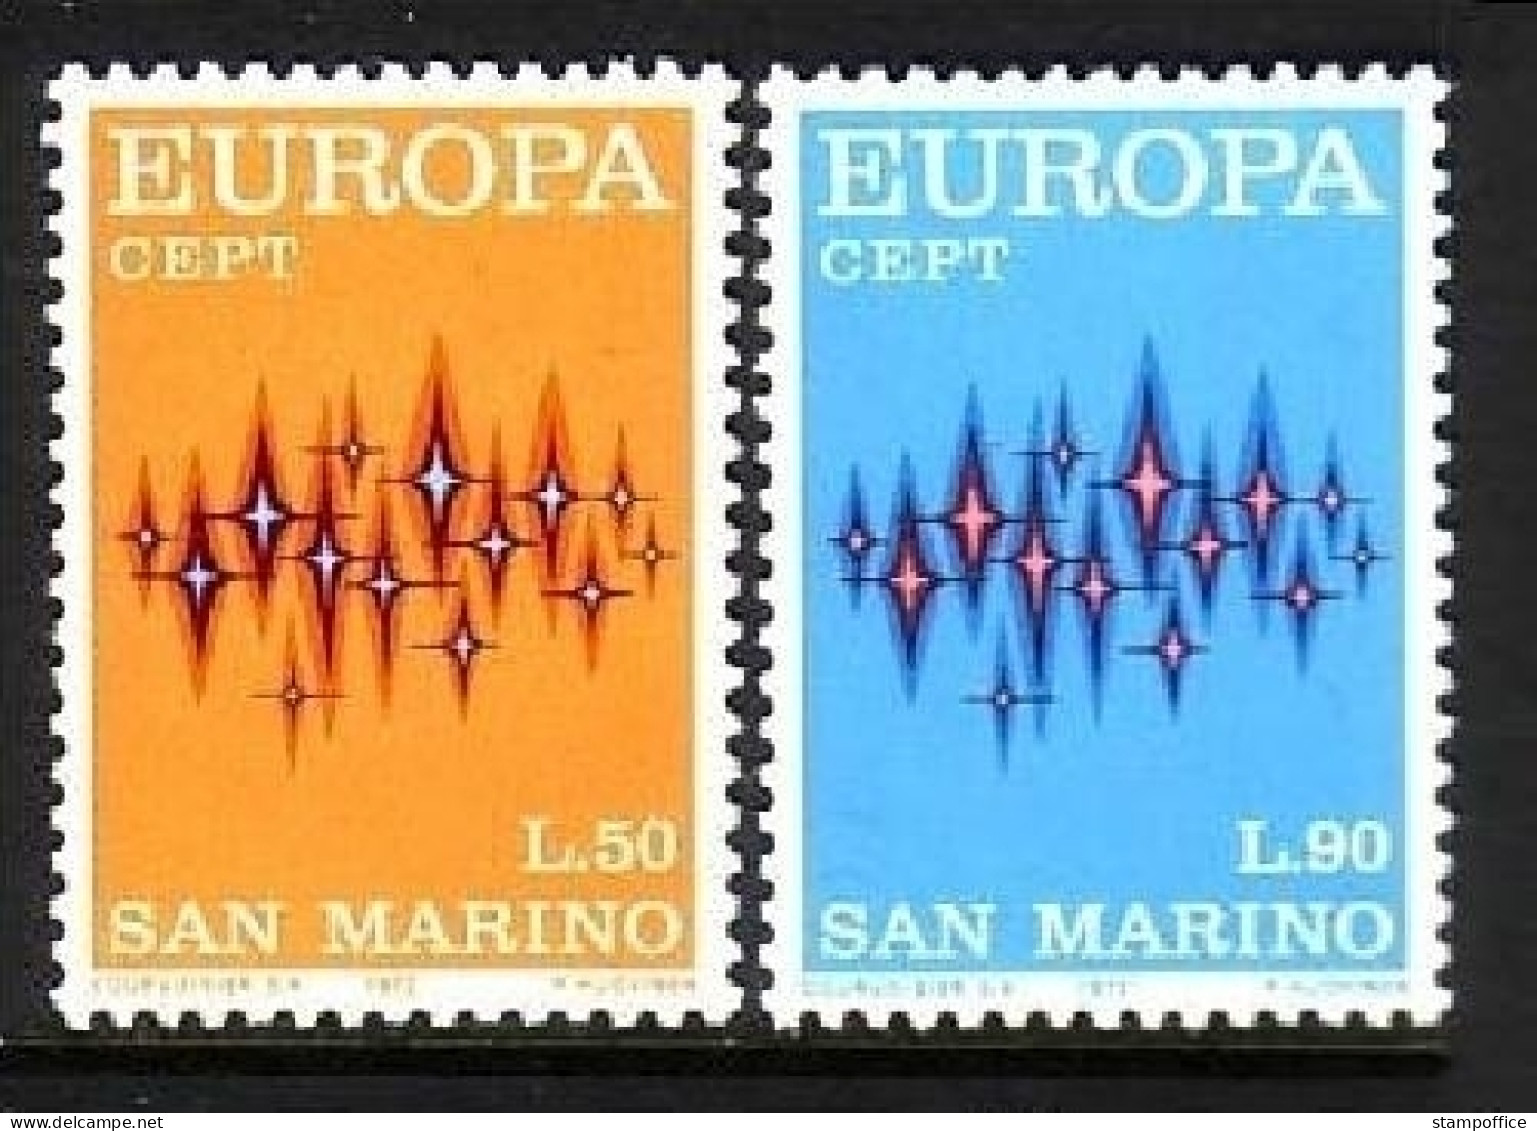 SAN MARINO MI-NR. 997-998 POSTFRISCH(MINT) EUROPA 1972 - STERNE - 1972